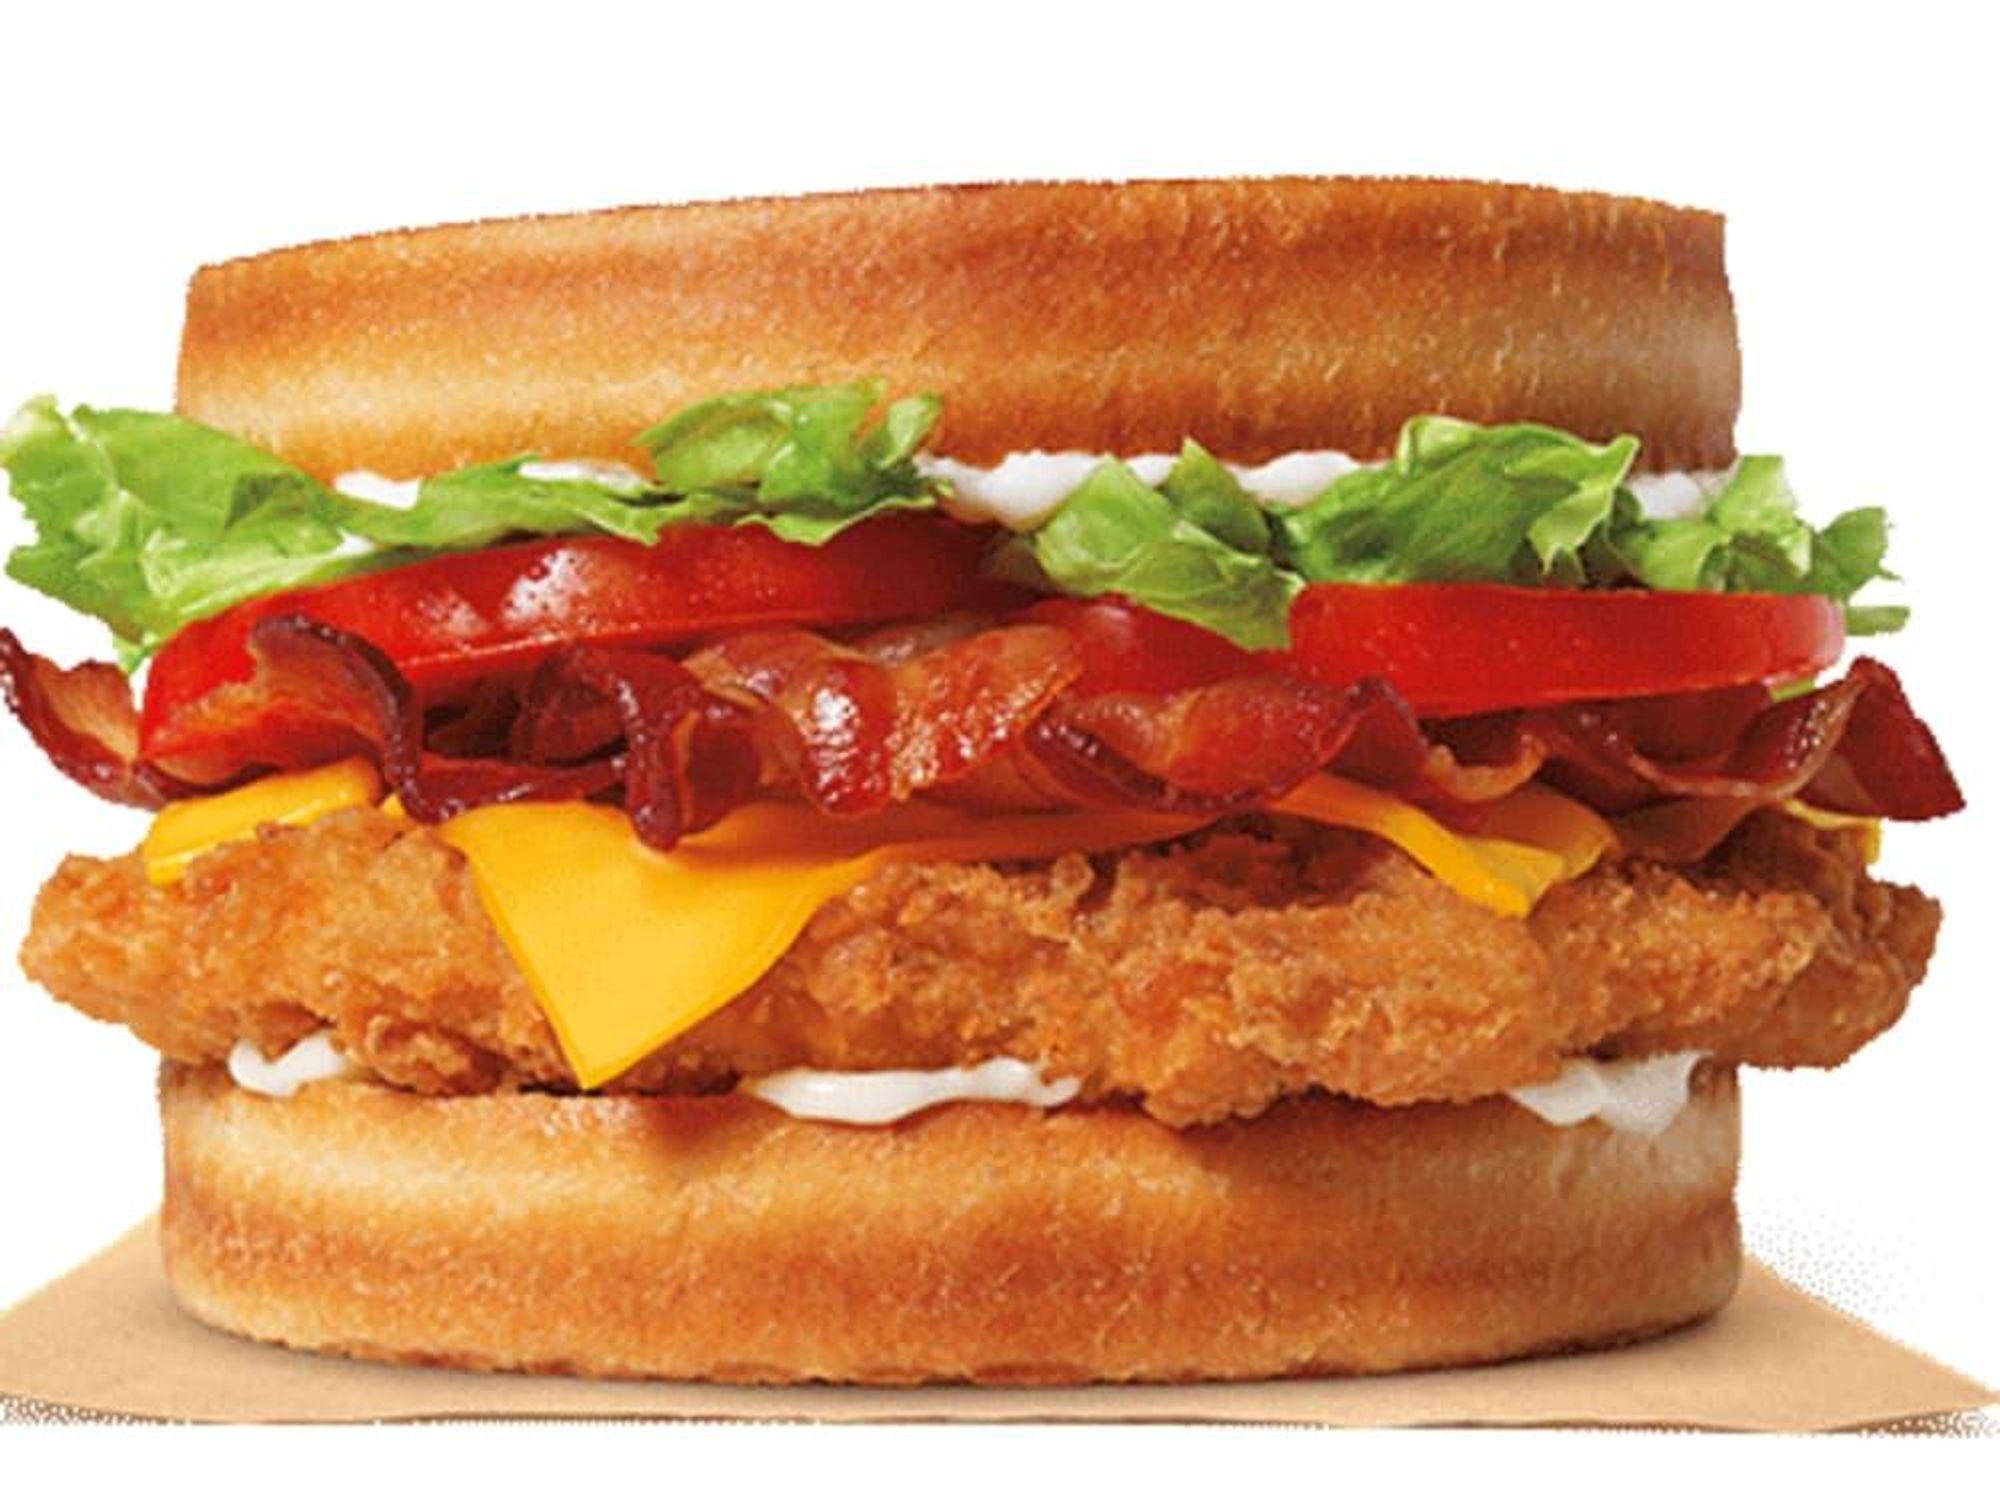 Burger King chicken sourdough sandwich